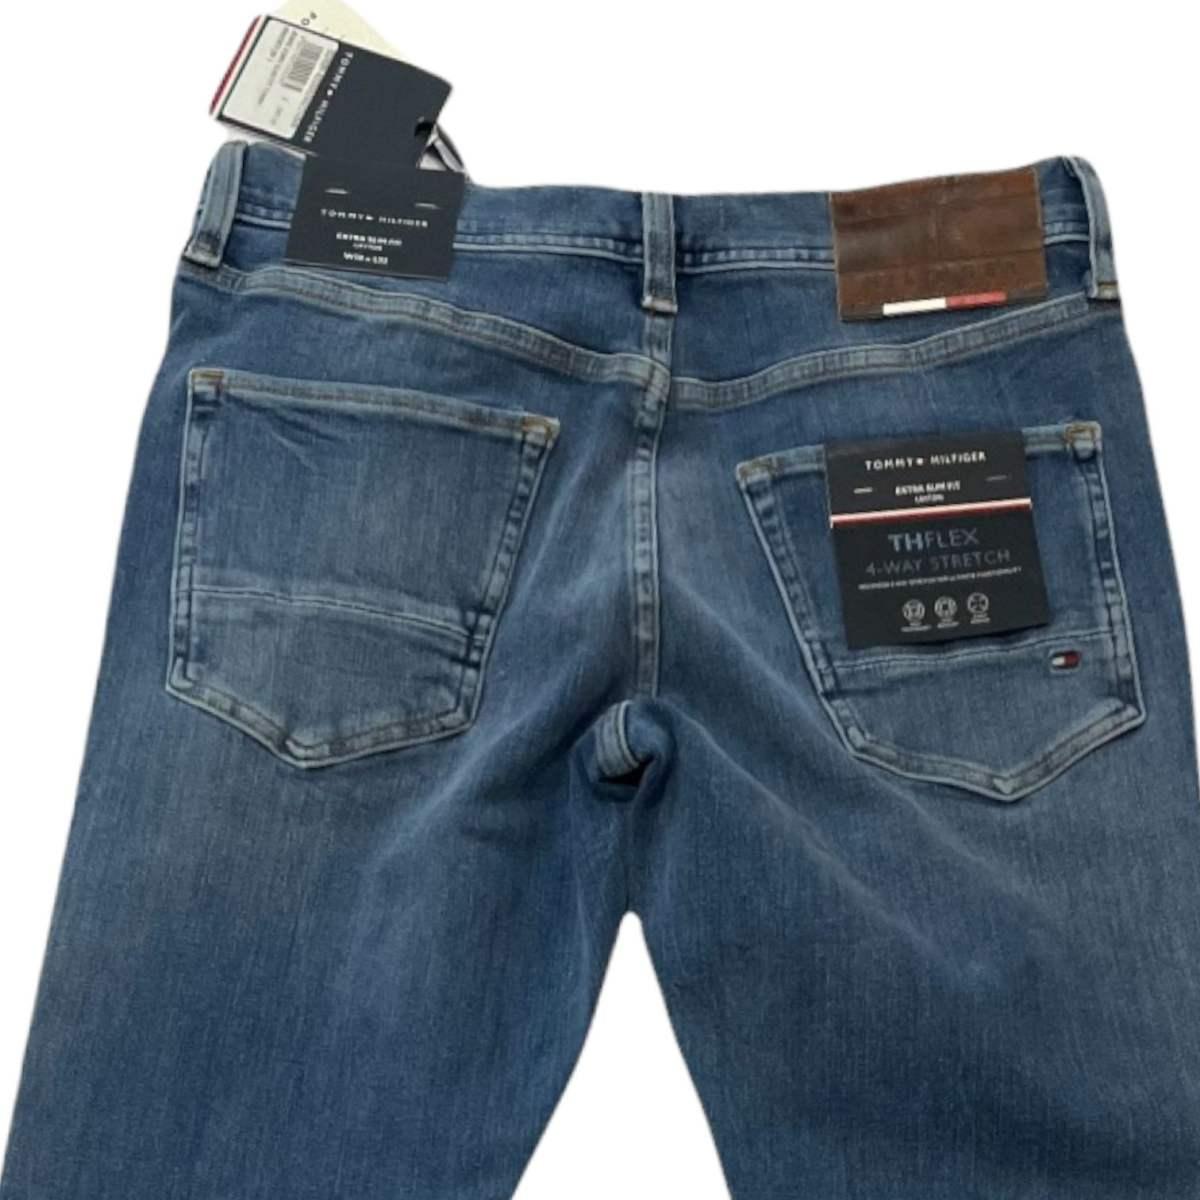 Jeans Uomo Slim Fit Tommy Mw21873